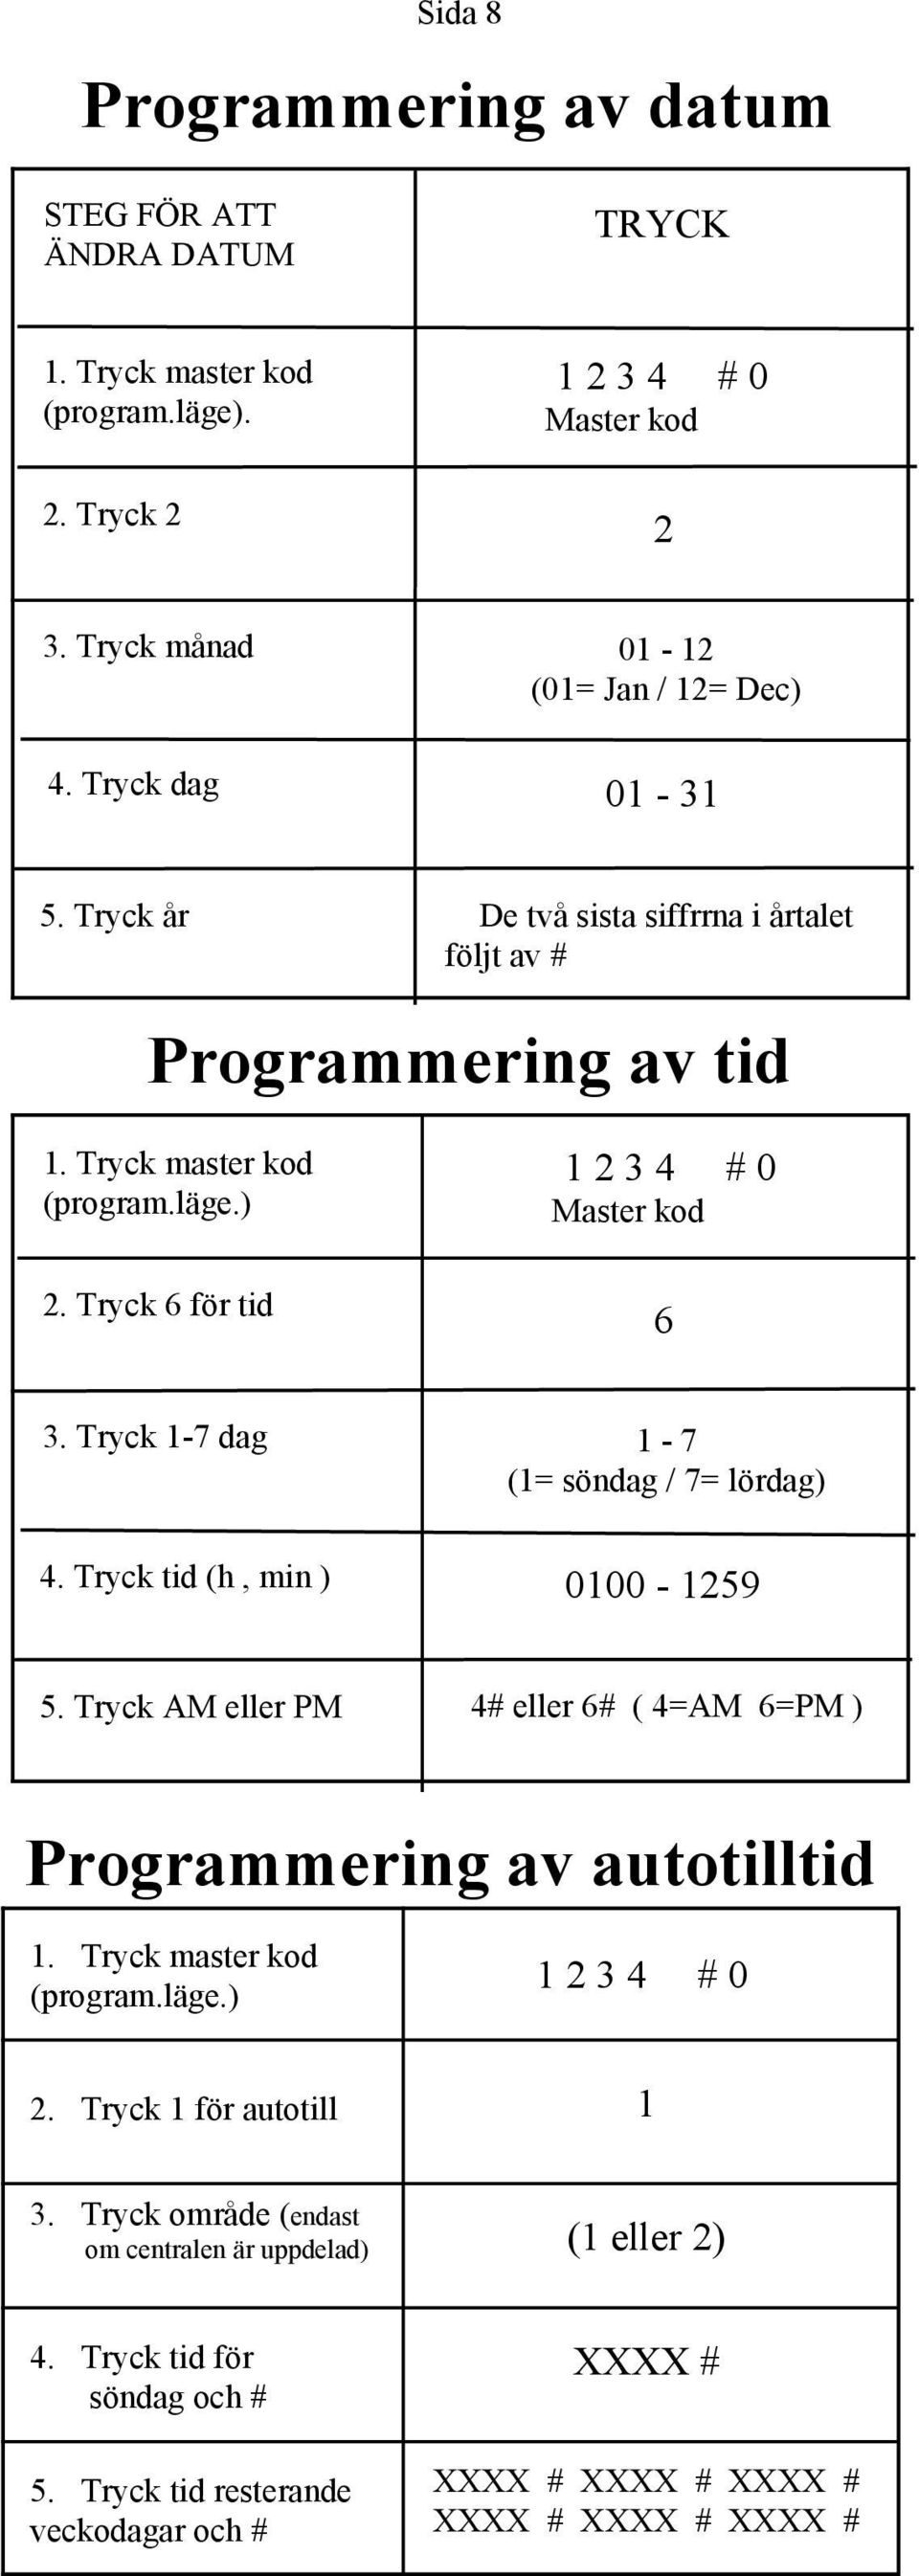 Tryck 1-7 dag 1-7 (1= söndag / 7= lördag) 4. Tryck tid (h, min ) 0100-1259 5. Tryck AM eller PM 4# eller 6# ( 4=AM 6=PM ) Programmering av autotilltid 1. Tryck master kod (program.läge.